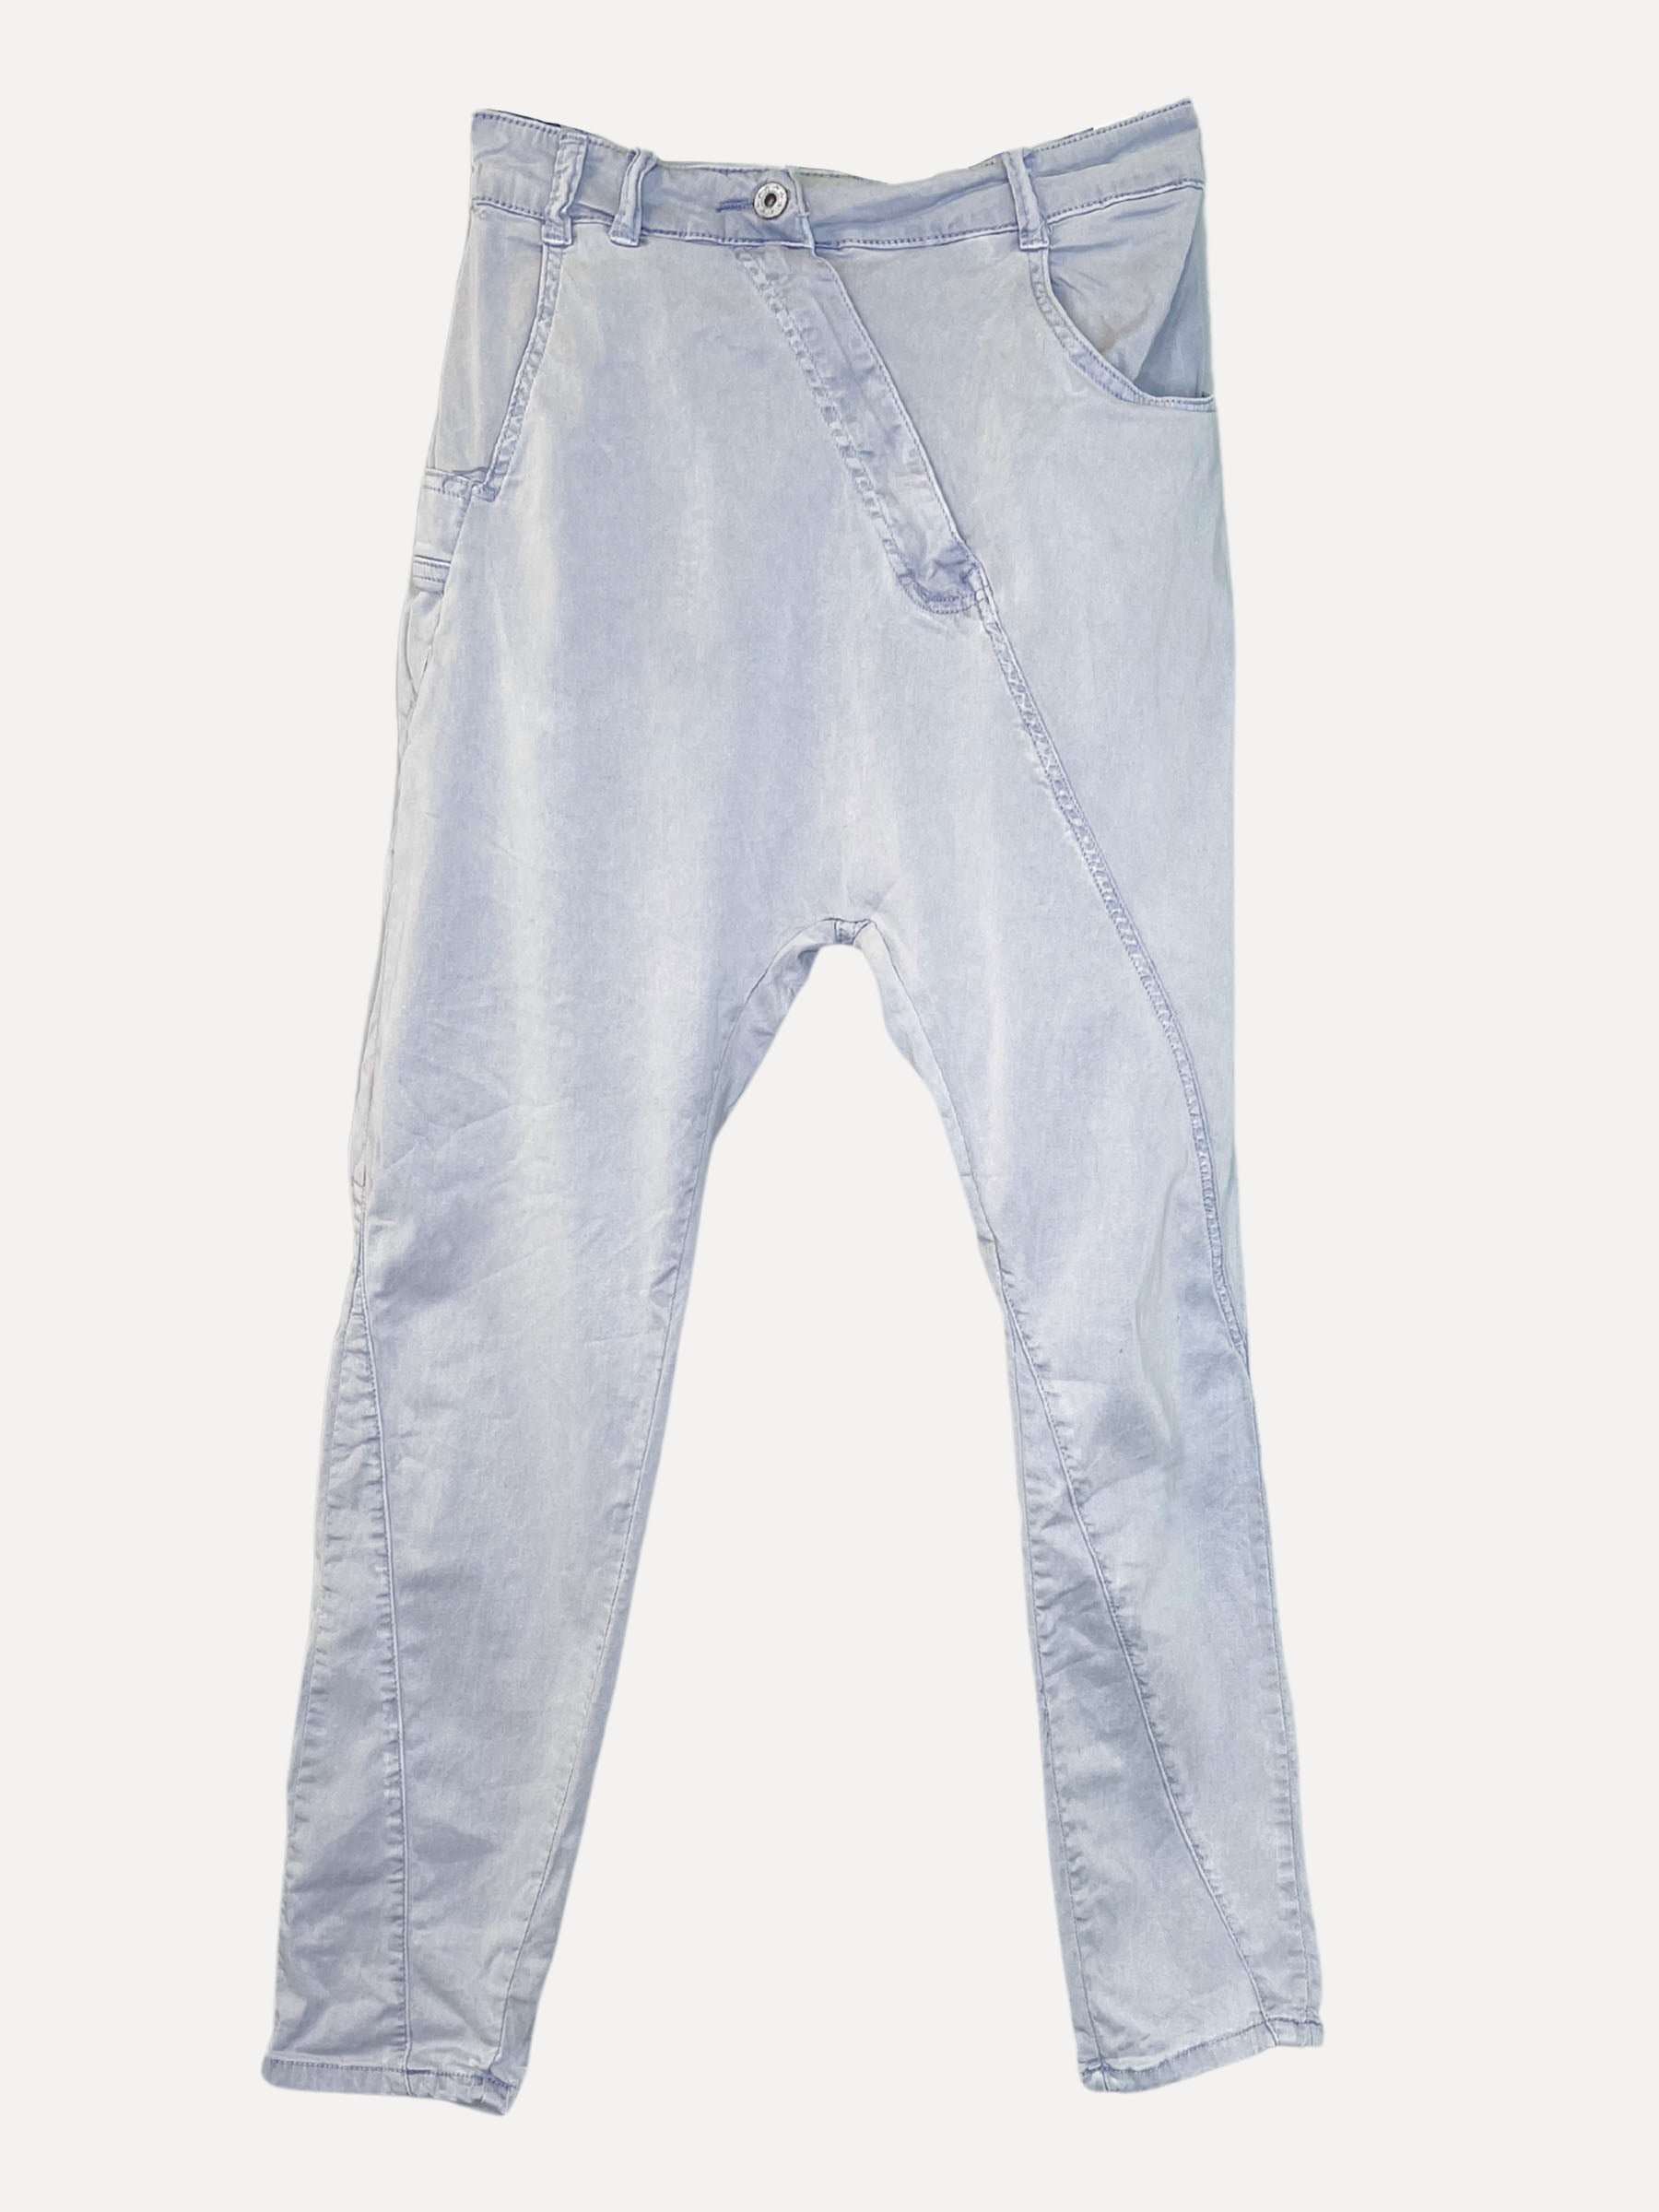 BOYFRIEND BAGGY Jeans, Sky Blue 8201-37